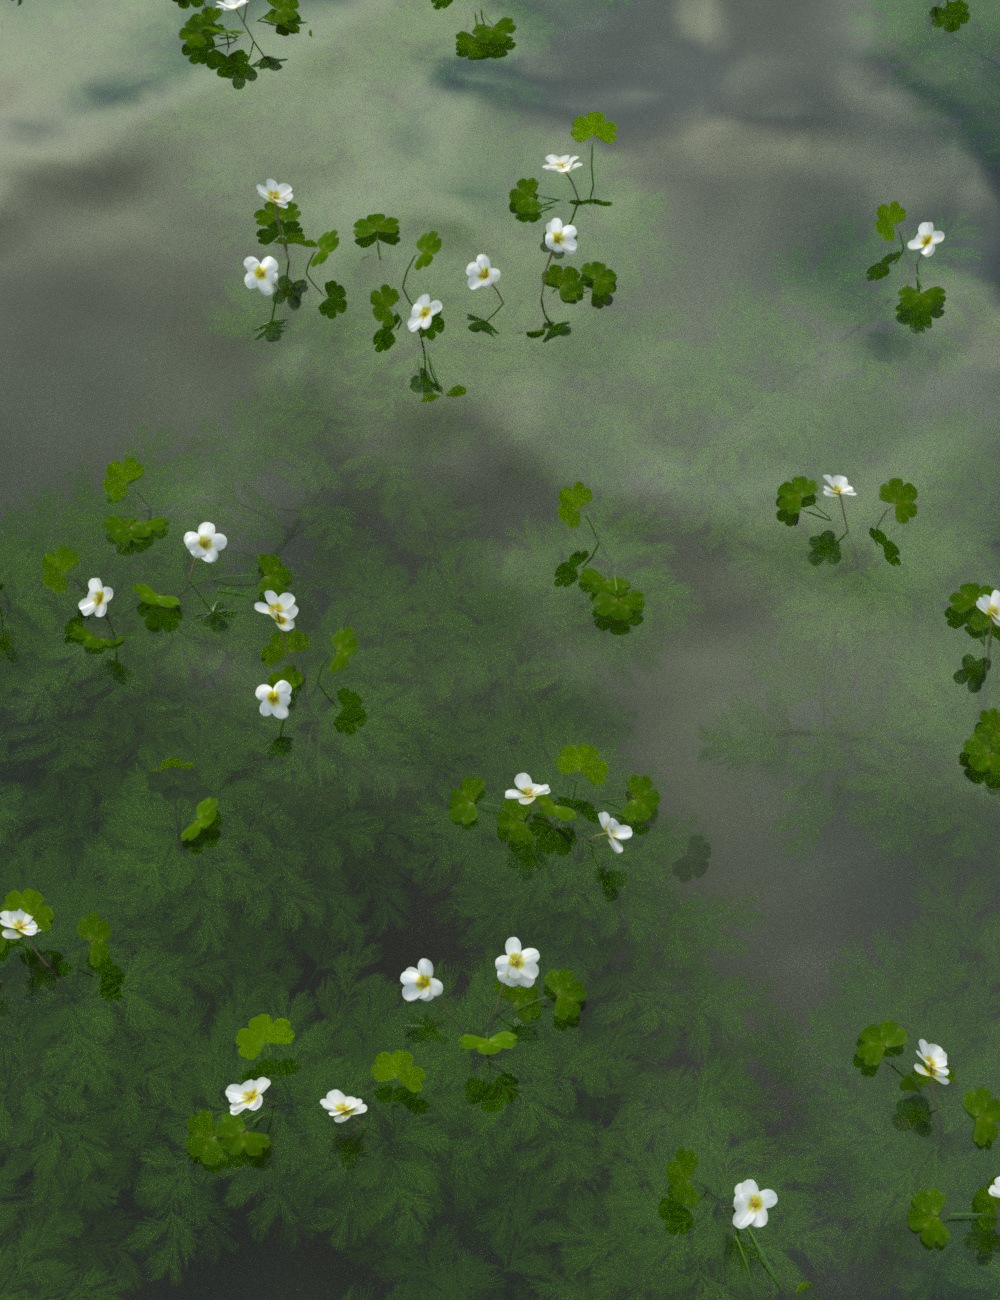 Wild Flowers - Water Plants Vol 2 by: MartinJFrost, 3D Models by Daz 3D